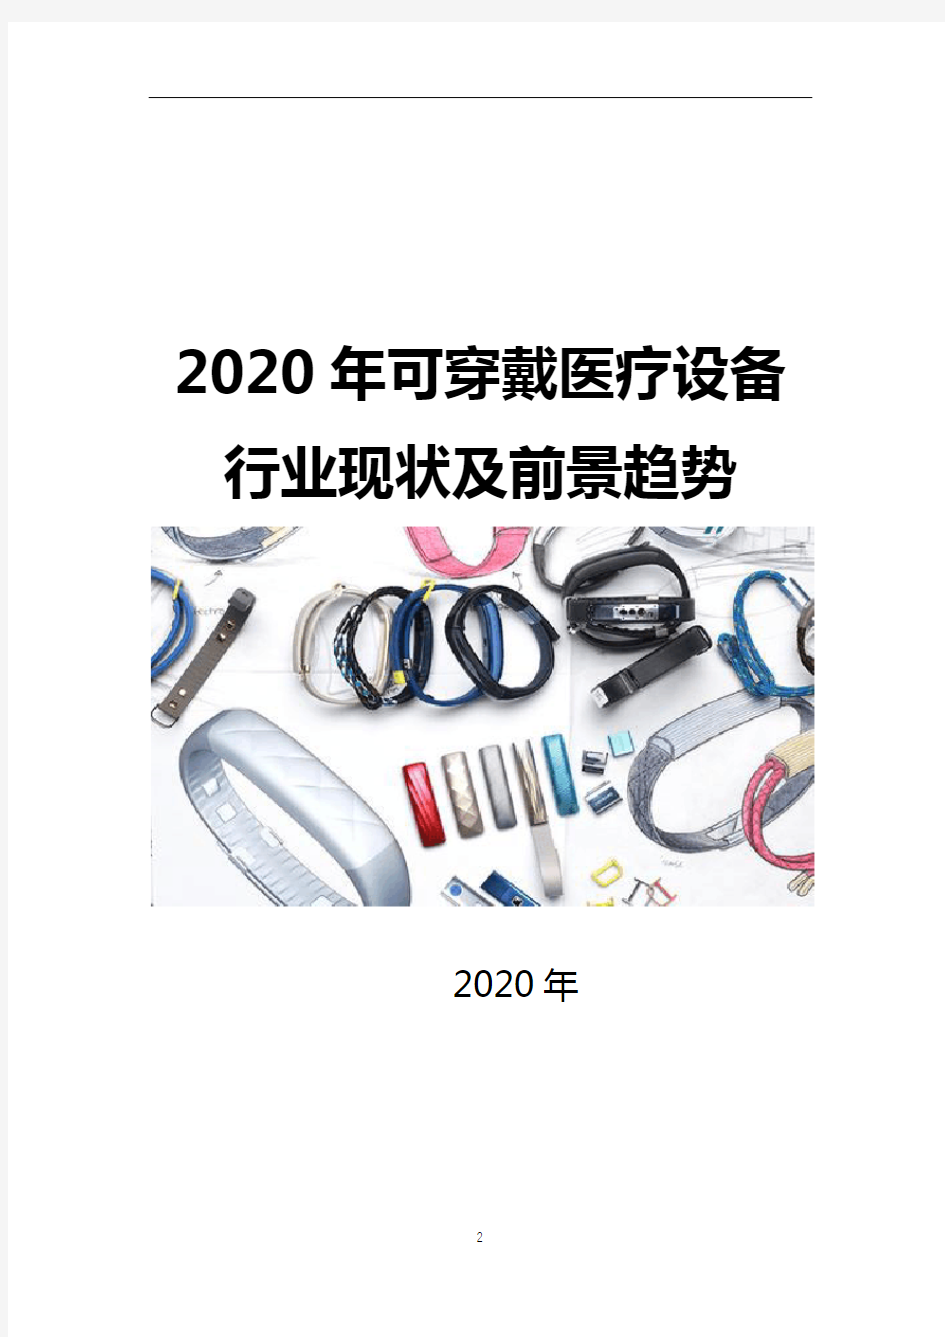 2020年可穿戴医疗设备行业现状及前景分析